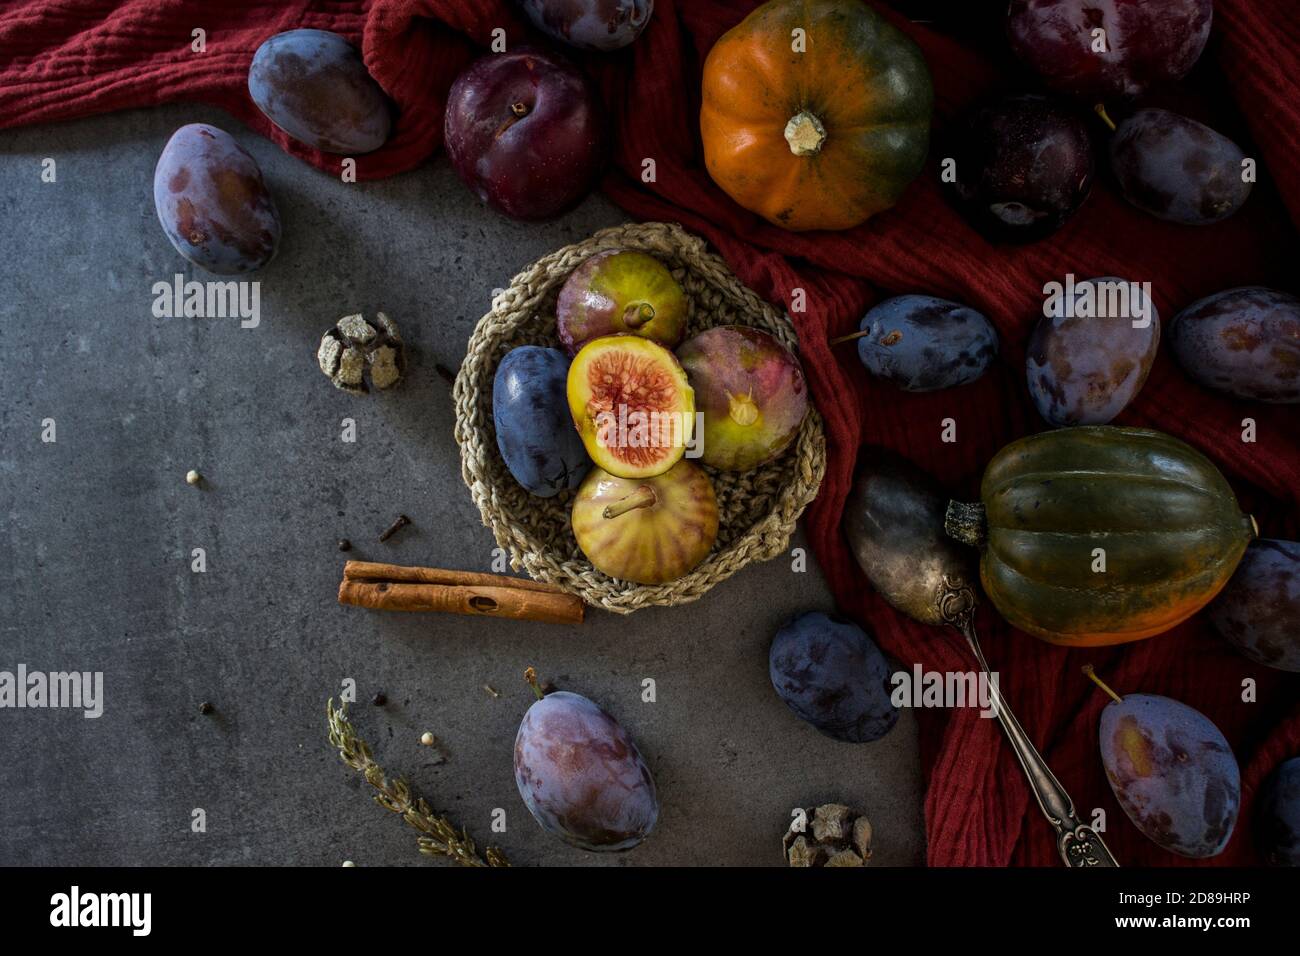 Frisches Obst und Gemüse auf dem Tisch. Foto von oben von Trauben, Kürbissen, Pflaumen und Feigen. Grauer strukturierter Hintergrund. Stillleben im Herbst. Stockfoto